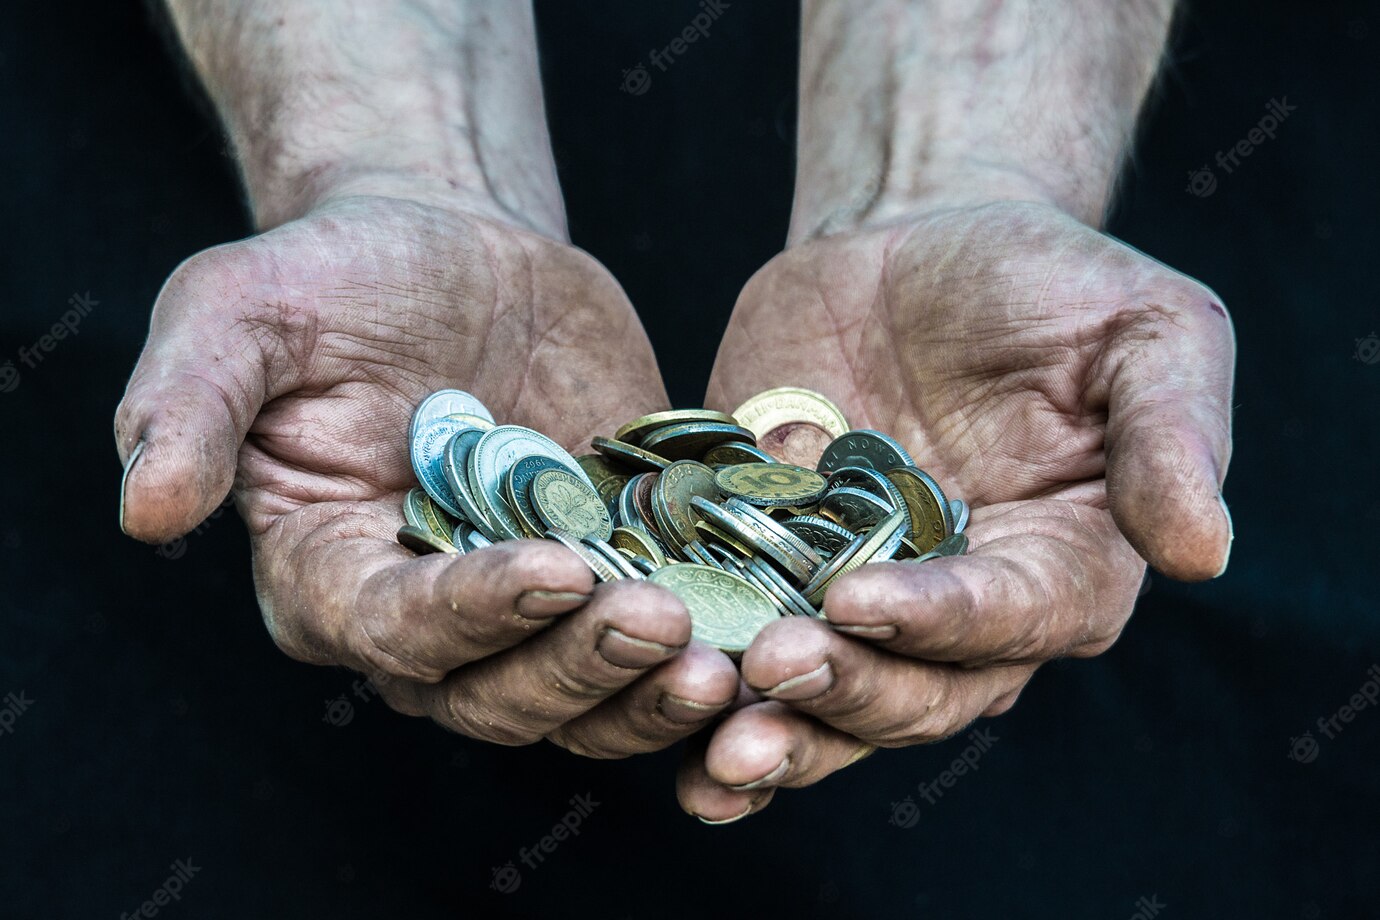 maos sujas pobre homem sem teto com muitas moedas de diferentes paises ilustrando a pobreza na sociedade capitalista moderna 140289 4